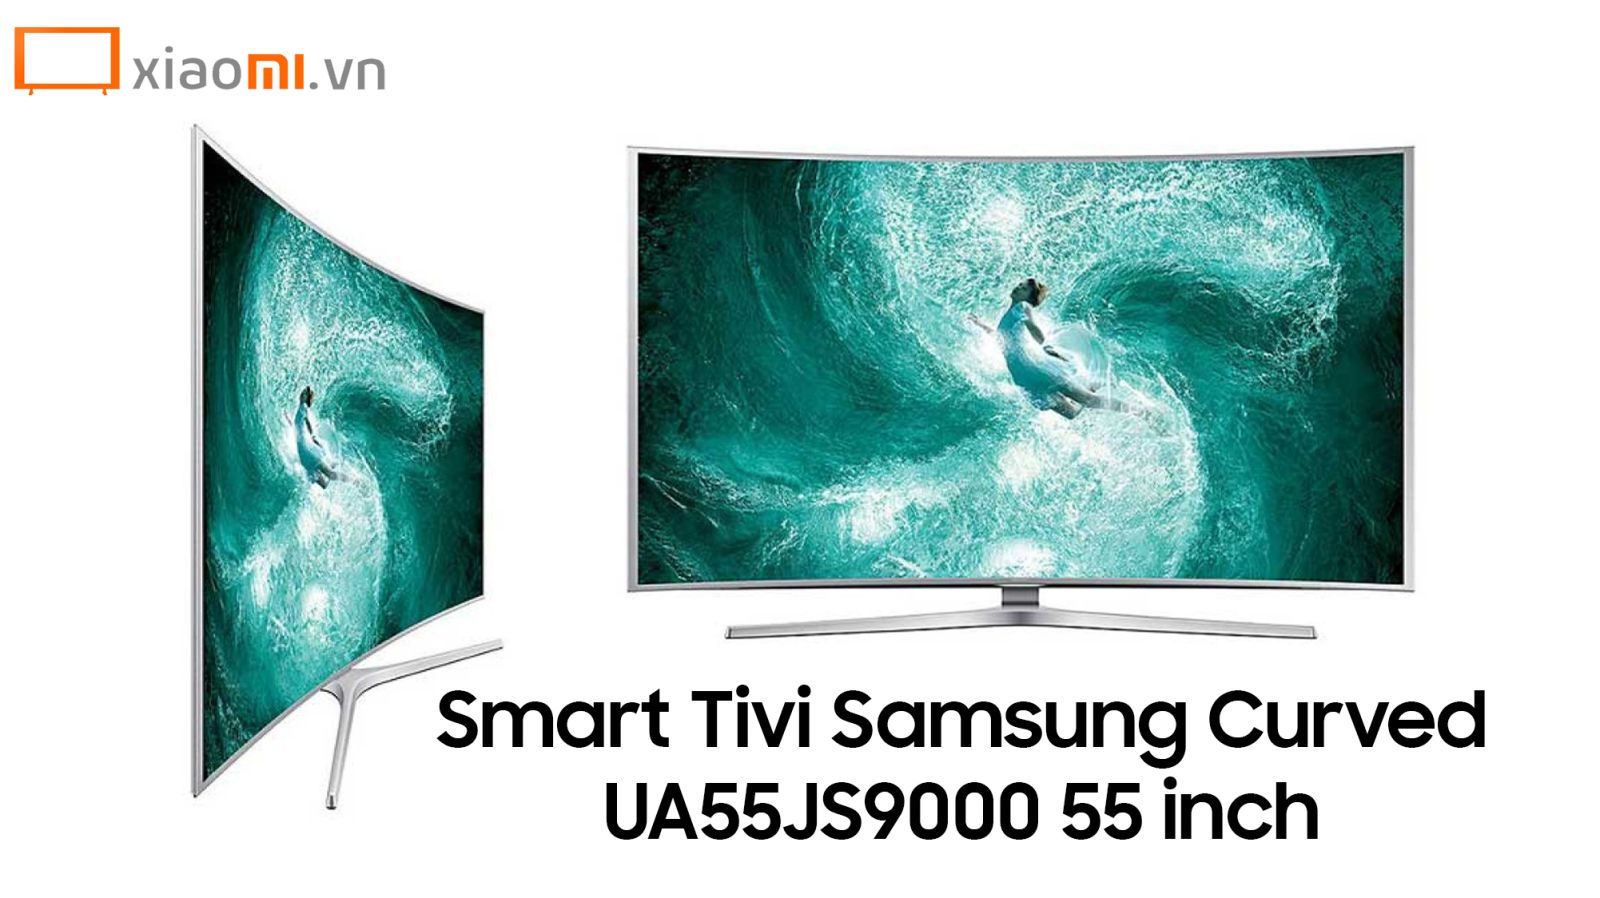 Smart Tivi Samsung Curved UA55JS9000 55 inch